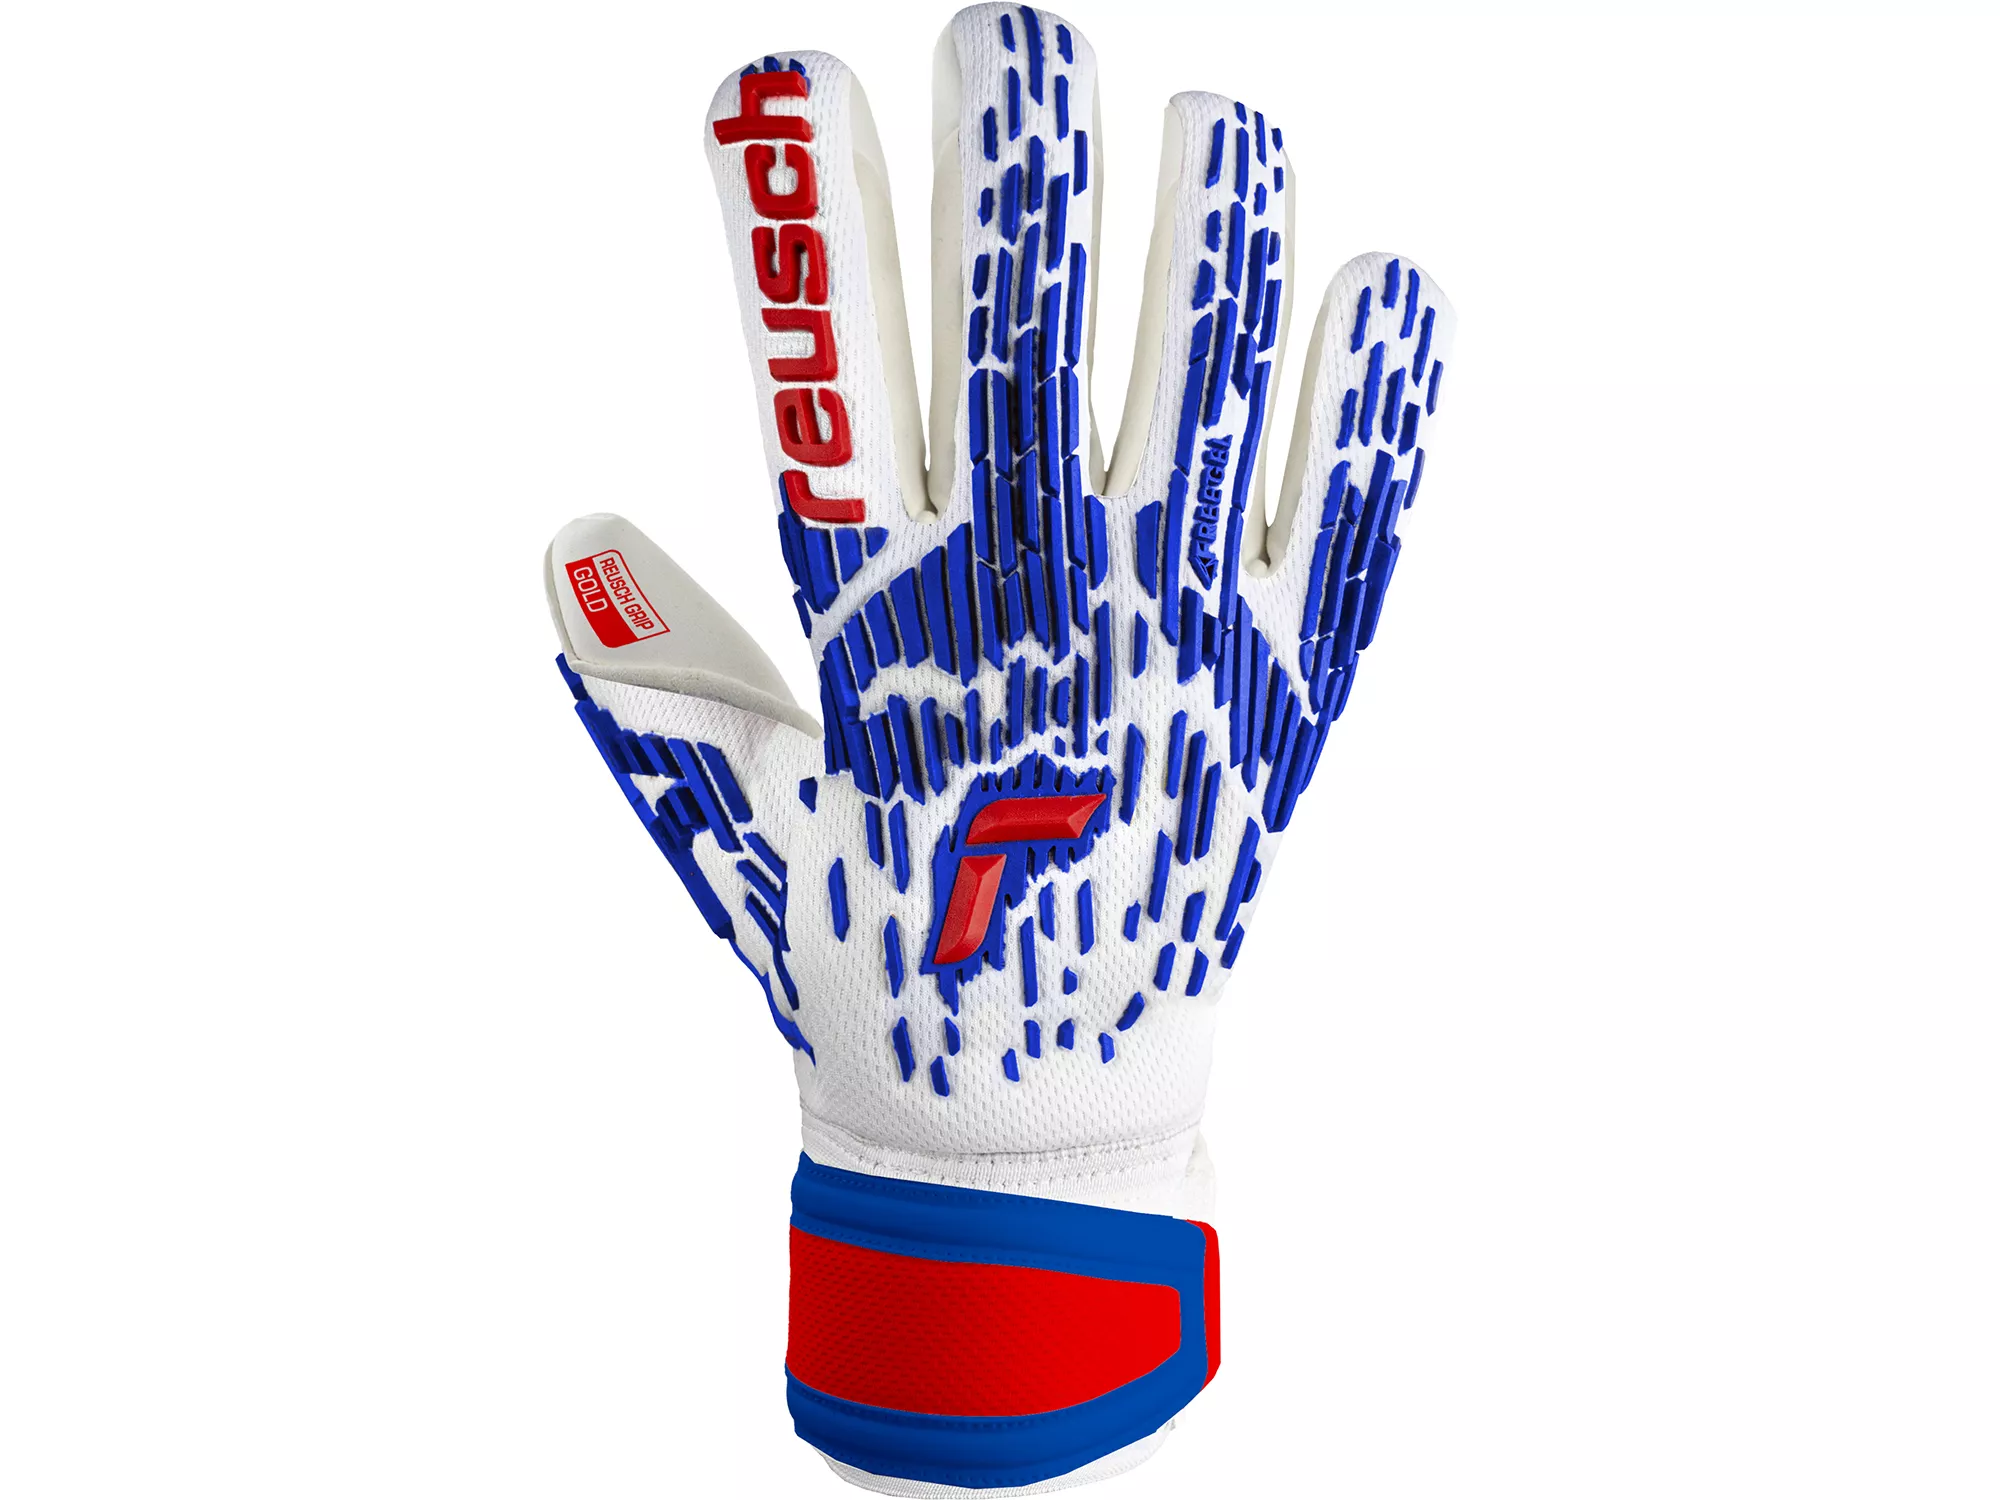 Reusch Adult Attrakt Freegel Gold Finger Support Goalkeeper Gloves